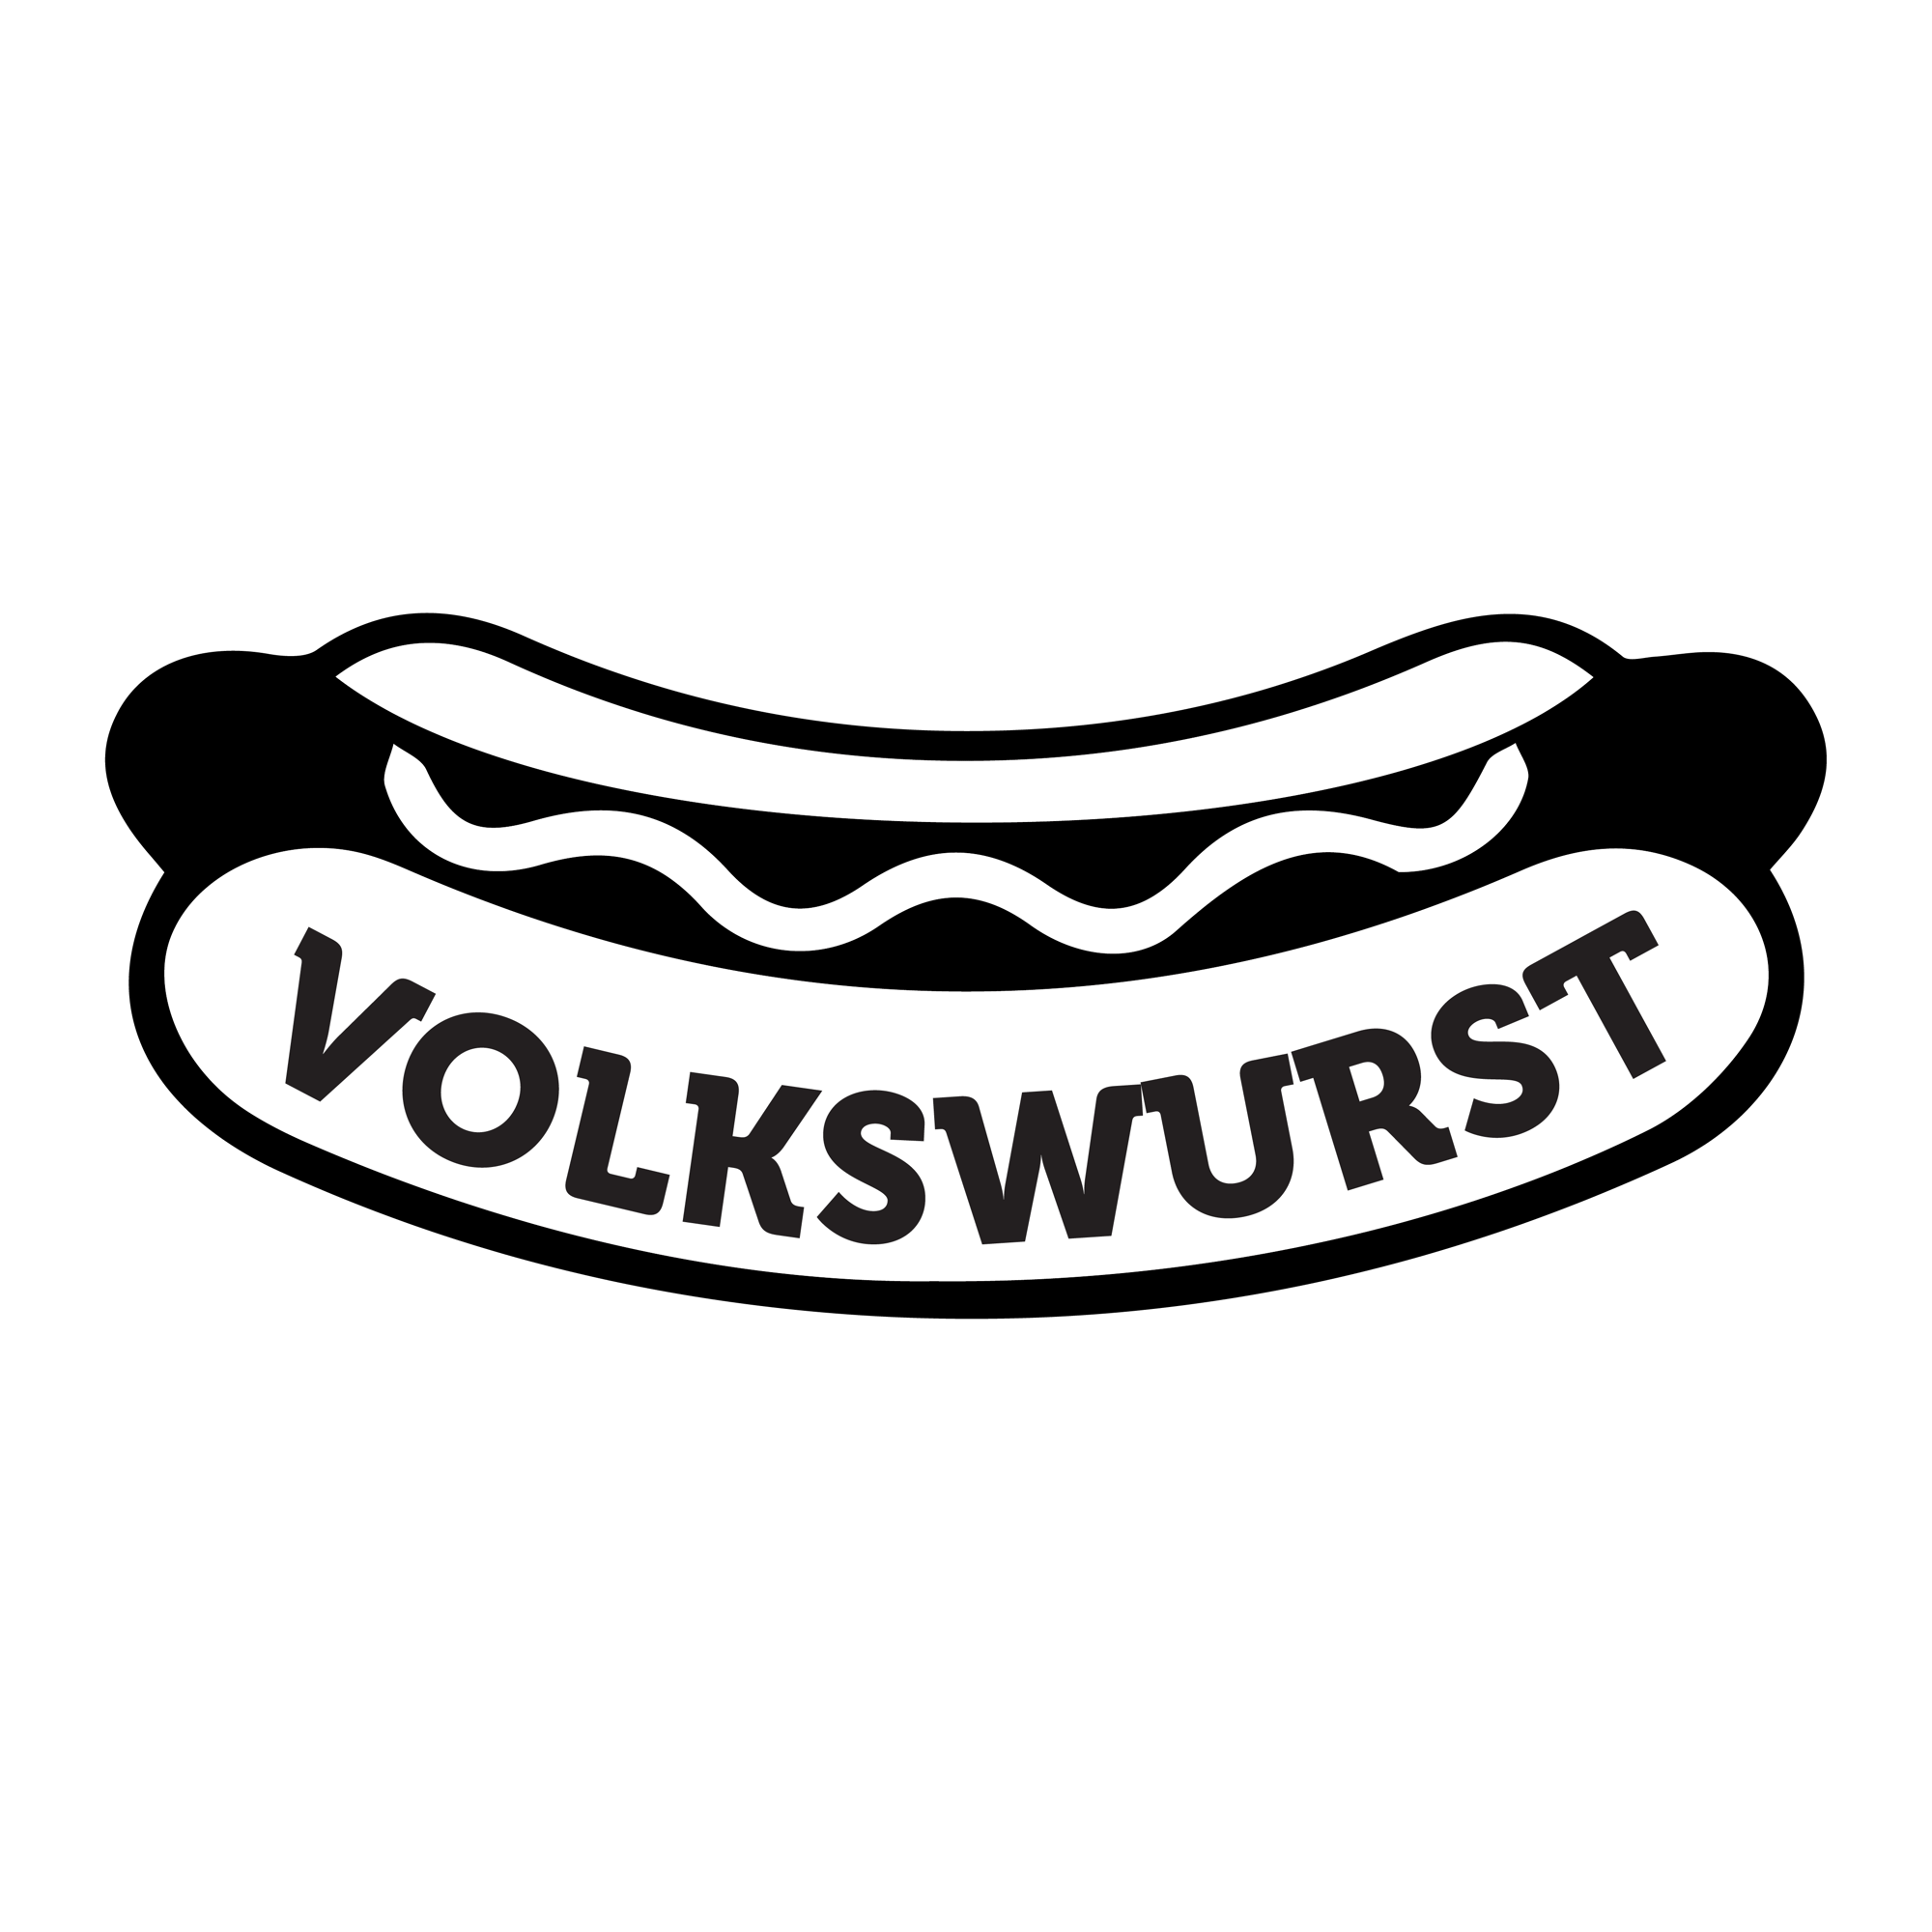 volkswurst stickers-18